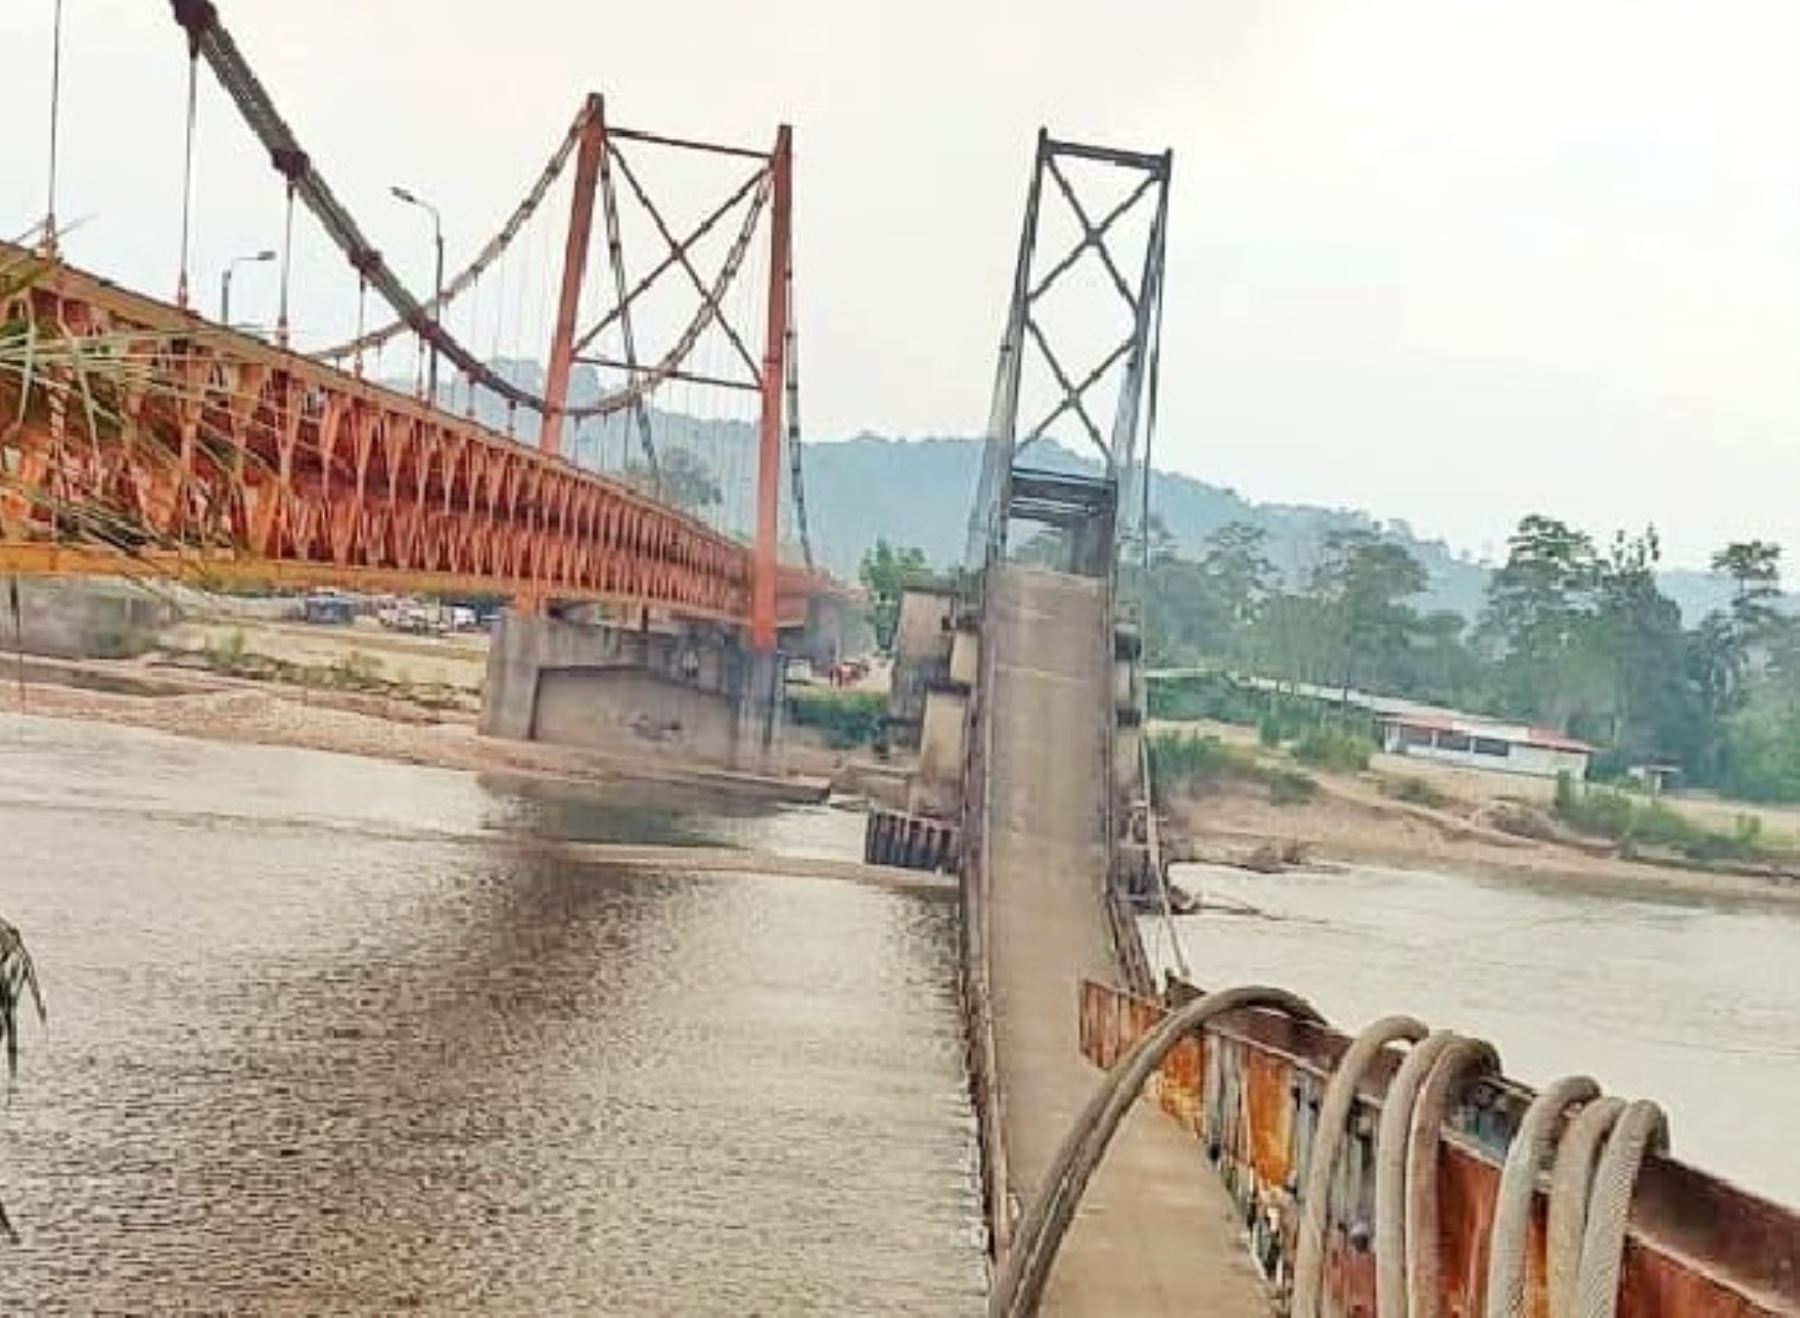 Técnicos de Provías Nacional iniciaron los trabajos de desmontaje del antiguo puente Aguaytía, ubicado en la región Ucayali, que colapsó hace una semana. Foto: ANDINA/difusión.